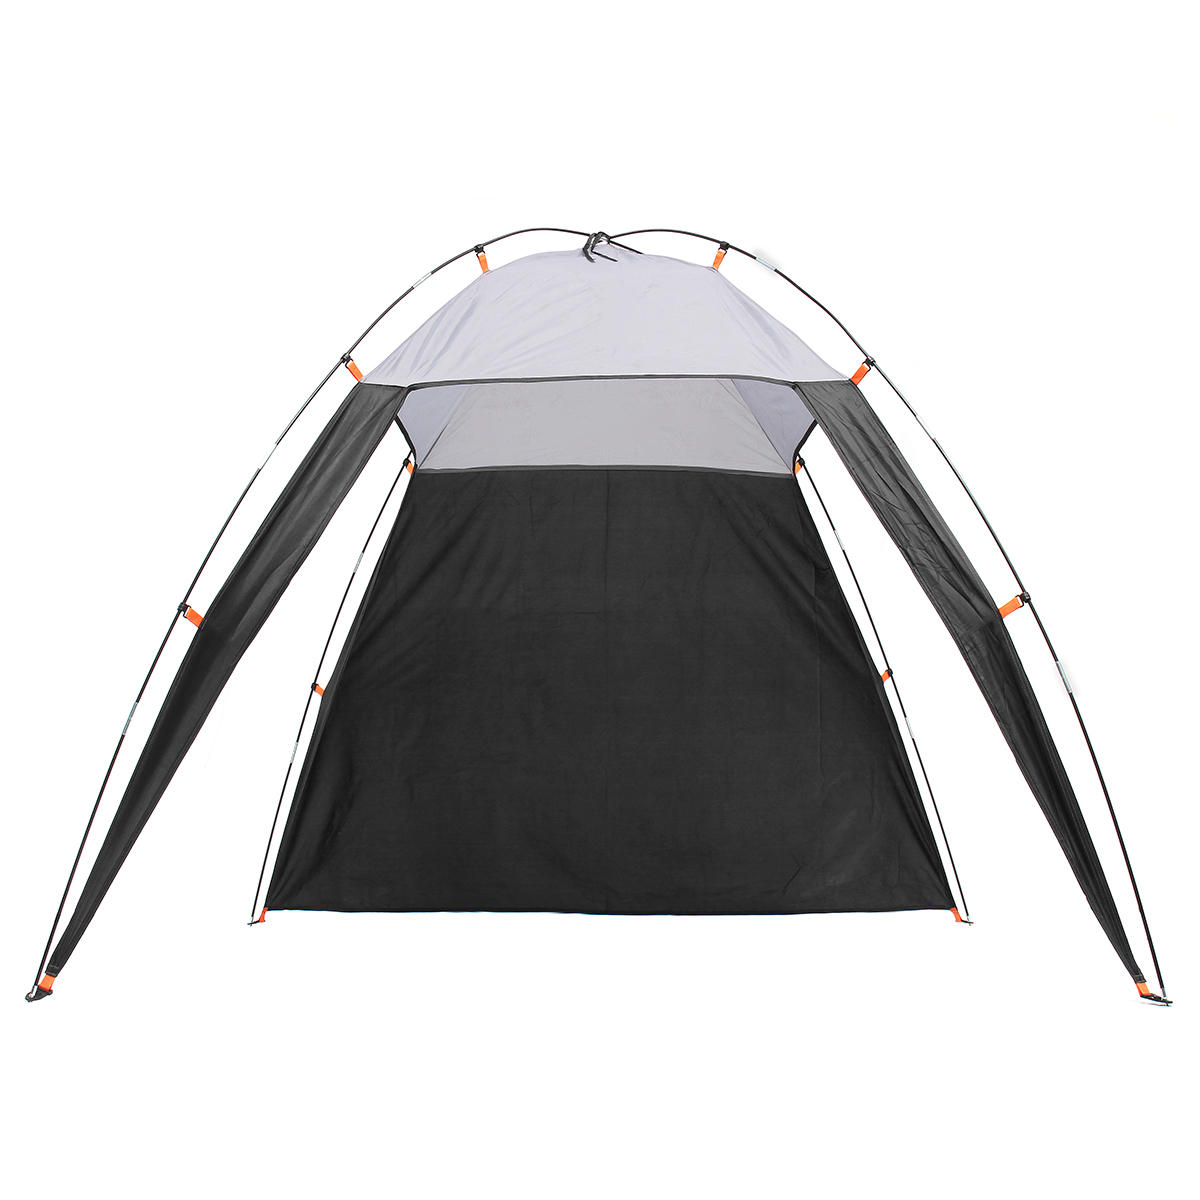 ançais: Tente triangulaire étanche et pare-soleil pour 5-8 personnes, idéale pour le camping et la randonnée sur la plage en plein air.